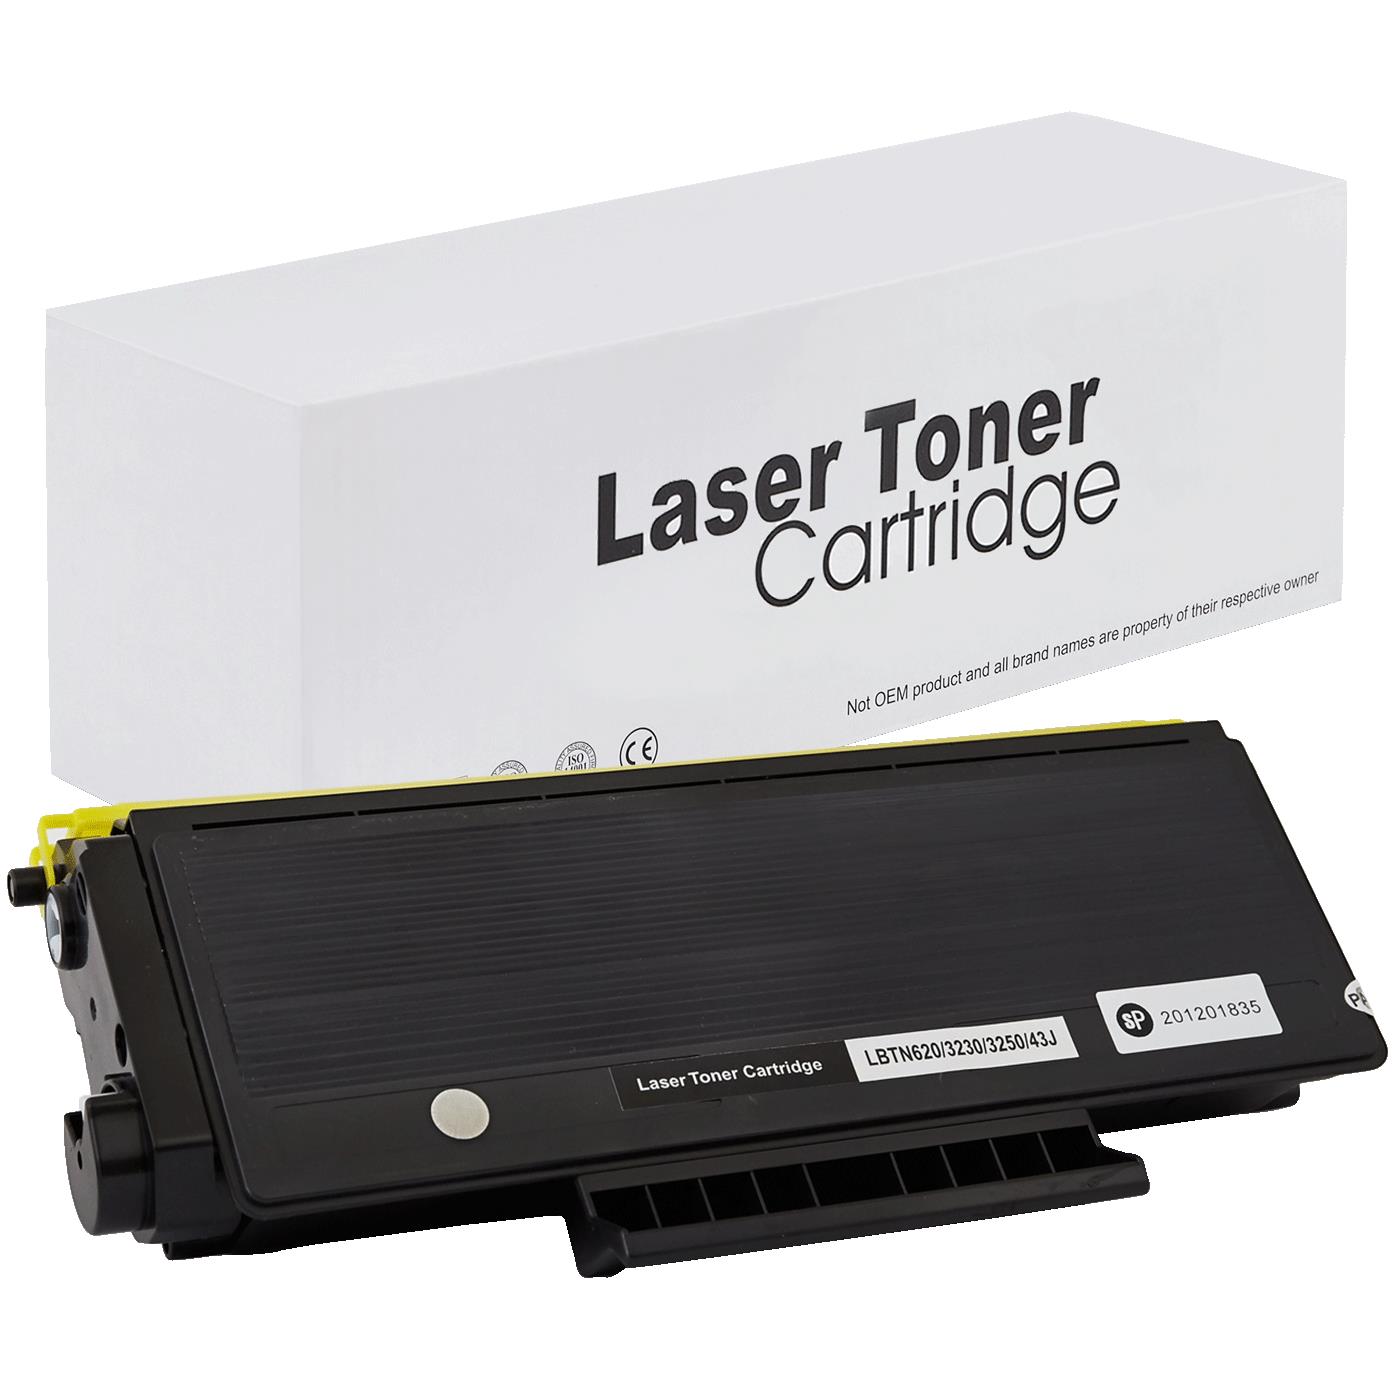 съвместима тонер касета за принтери и печатащи устройства на Brother HL 5340 DW Toner BR-3230 | TN3230. Ниски цени, прецизно изпълнение, високо качество.